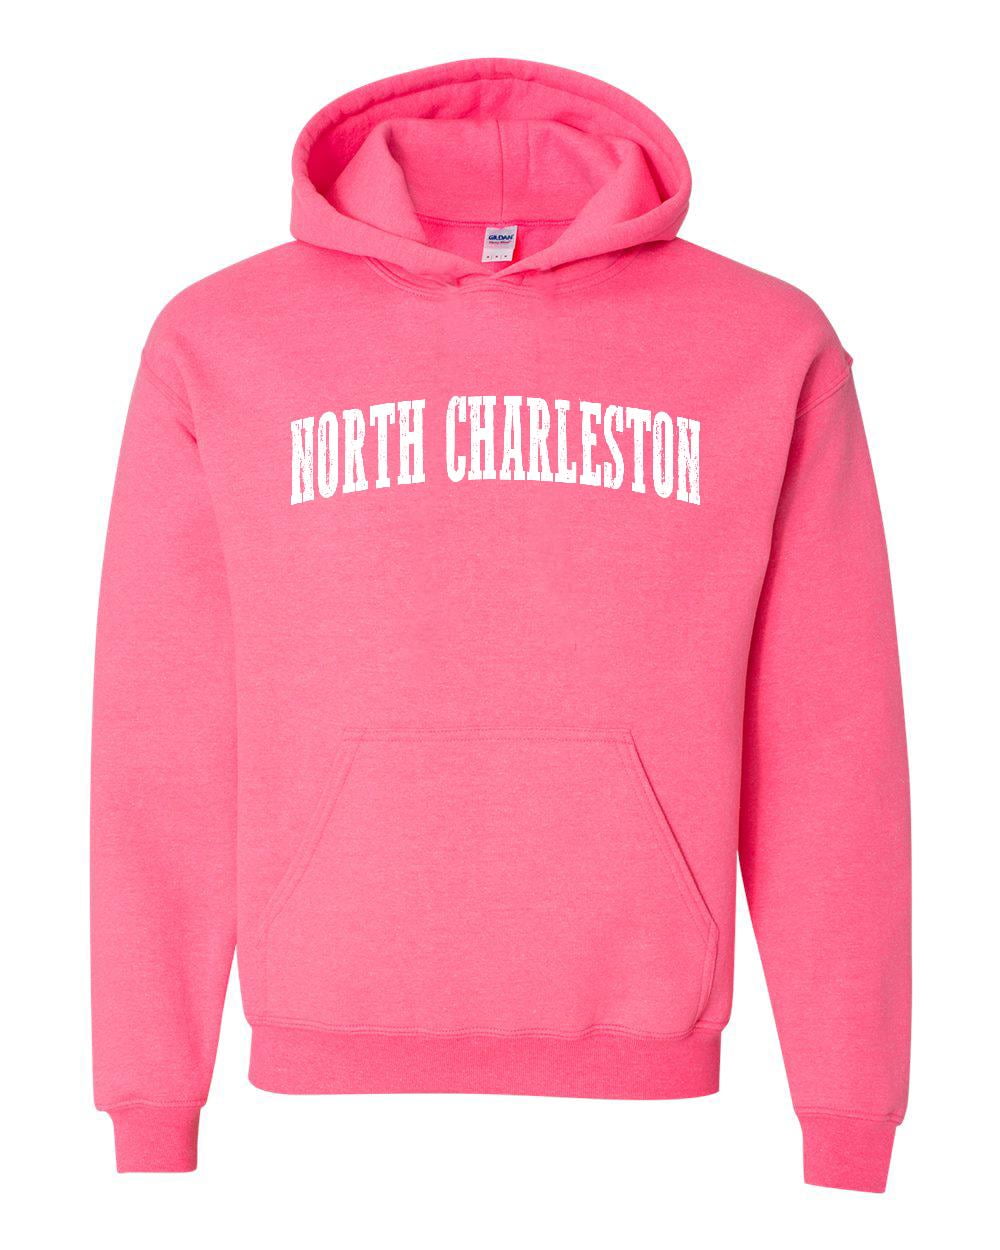 women's clothing North Charleston